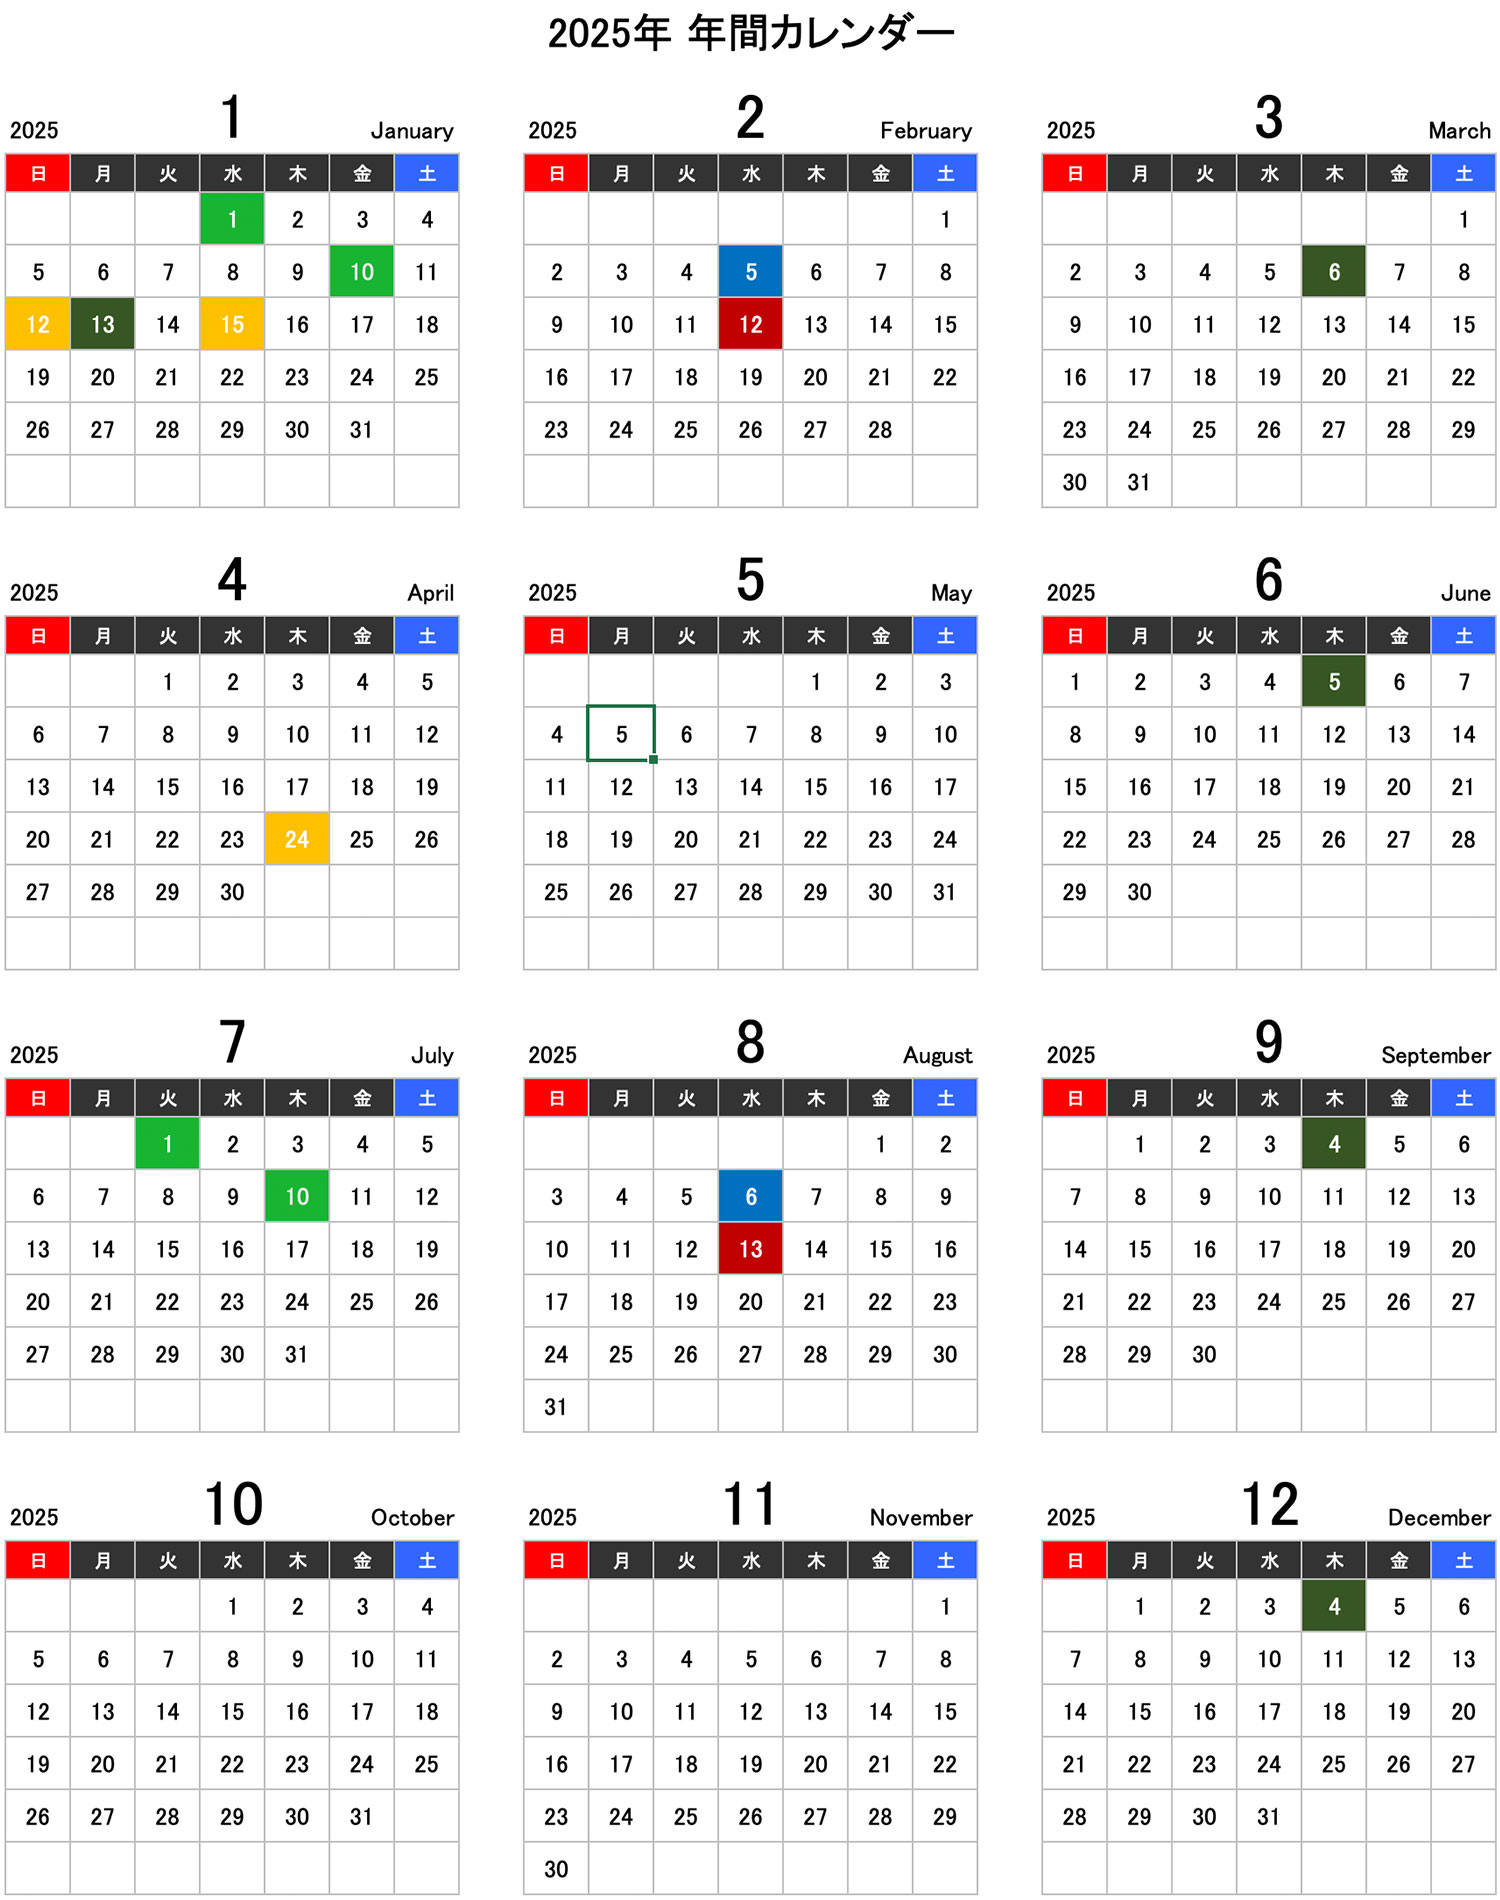 2025利払日カレンダー